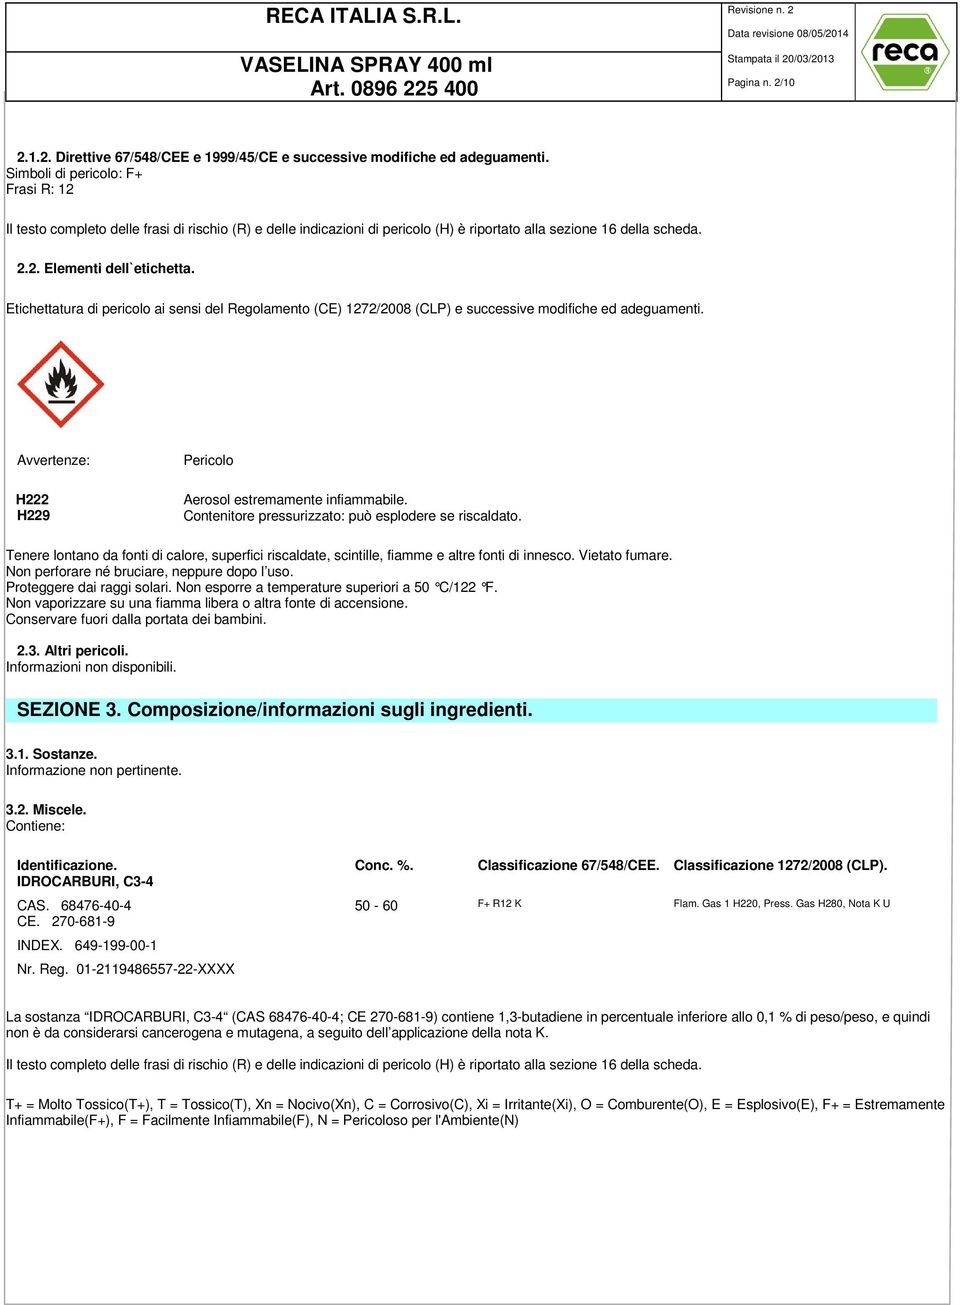 Etichettatura di pericolo ai sensi del Regolamento (CE) 1272/2008 (CLP) e successive modifiche ed adeguamenti. Avvertenze: H222 H229 Pericolo Aerosol estremamente infiammabile.